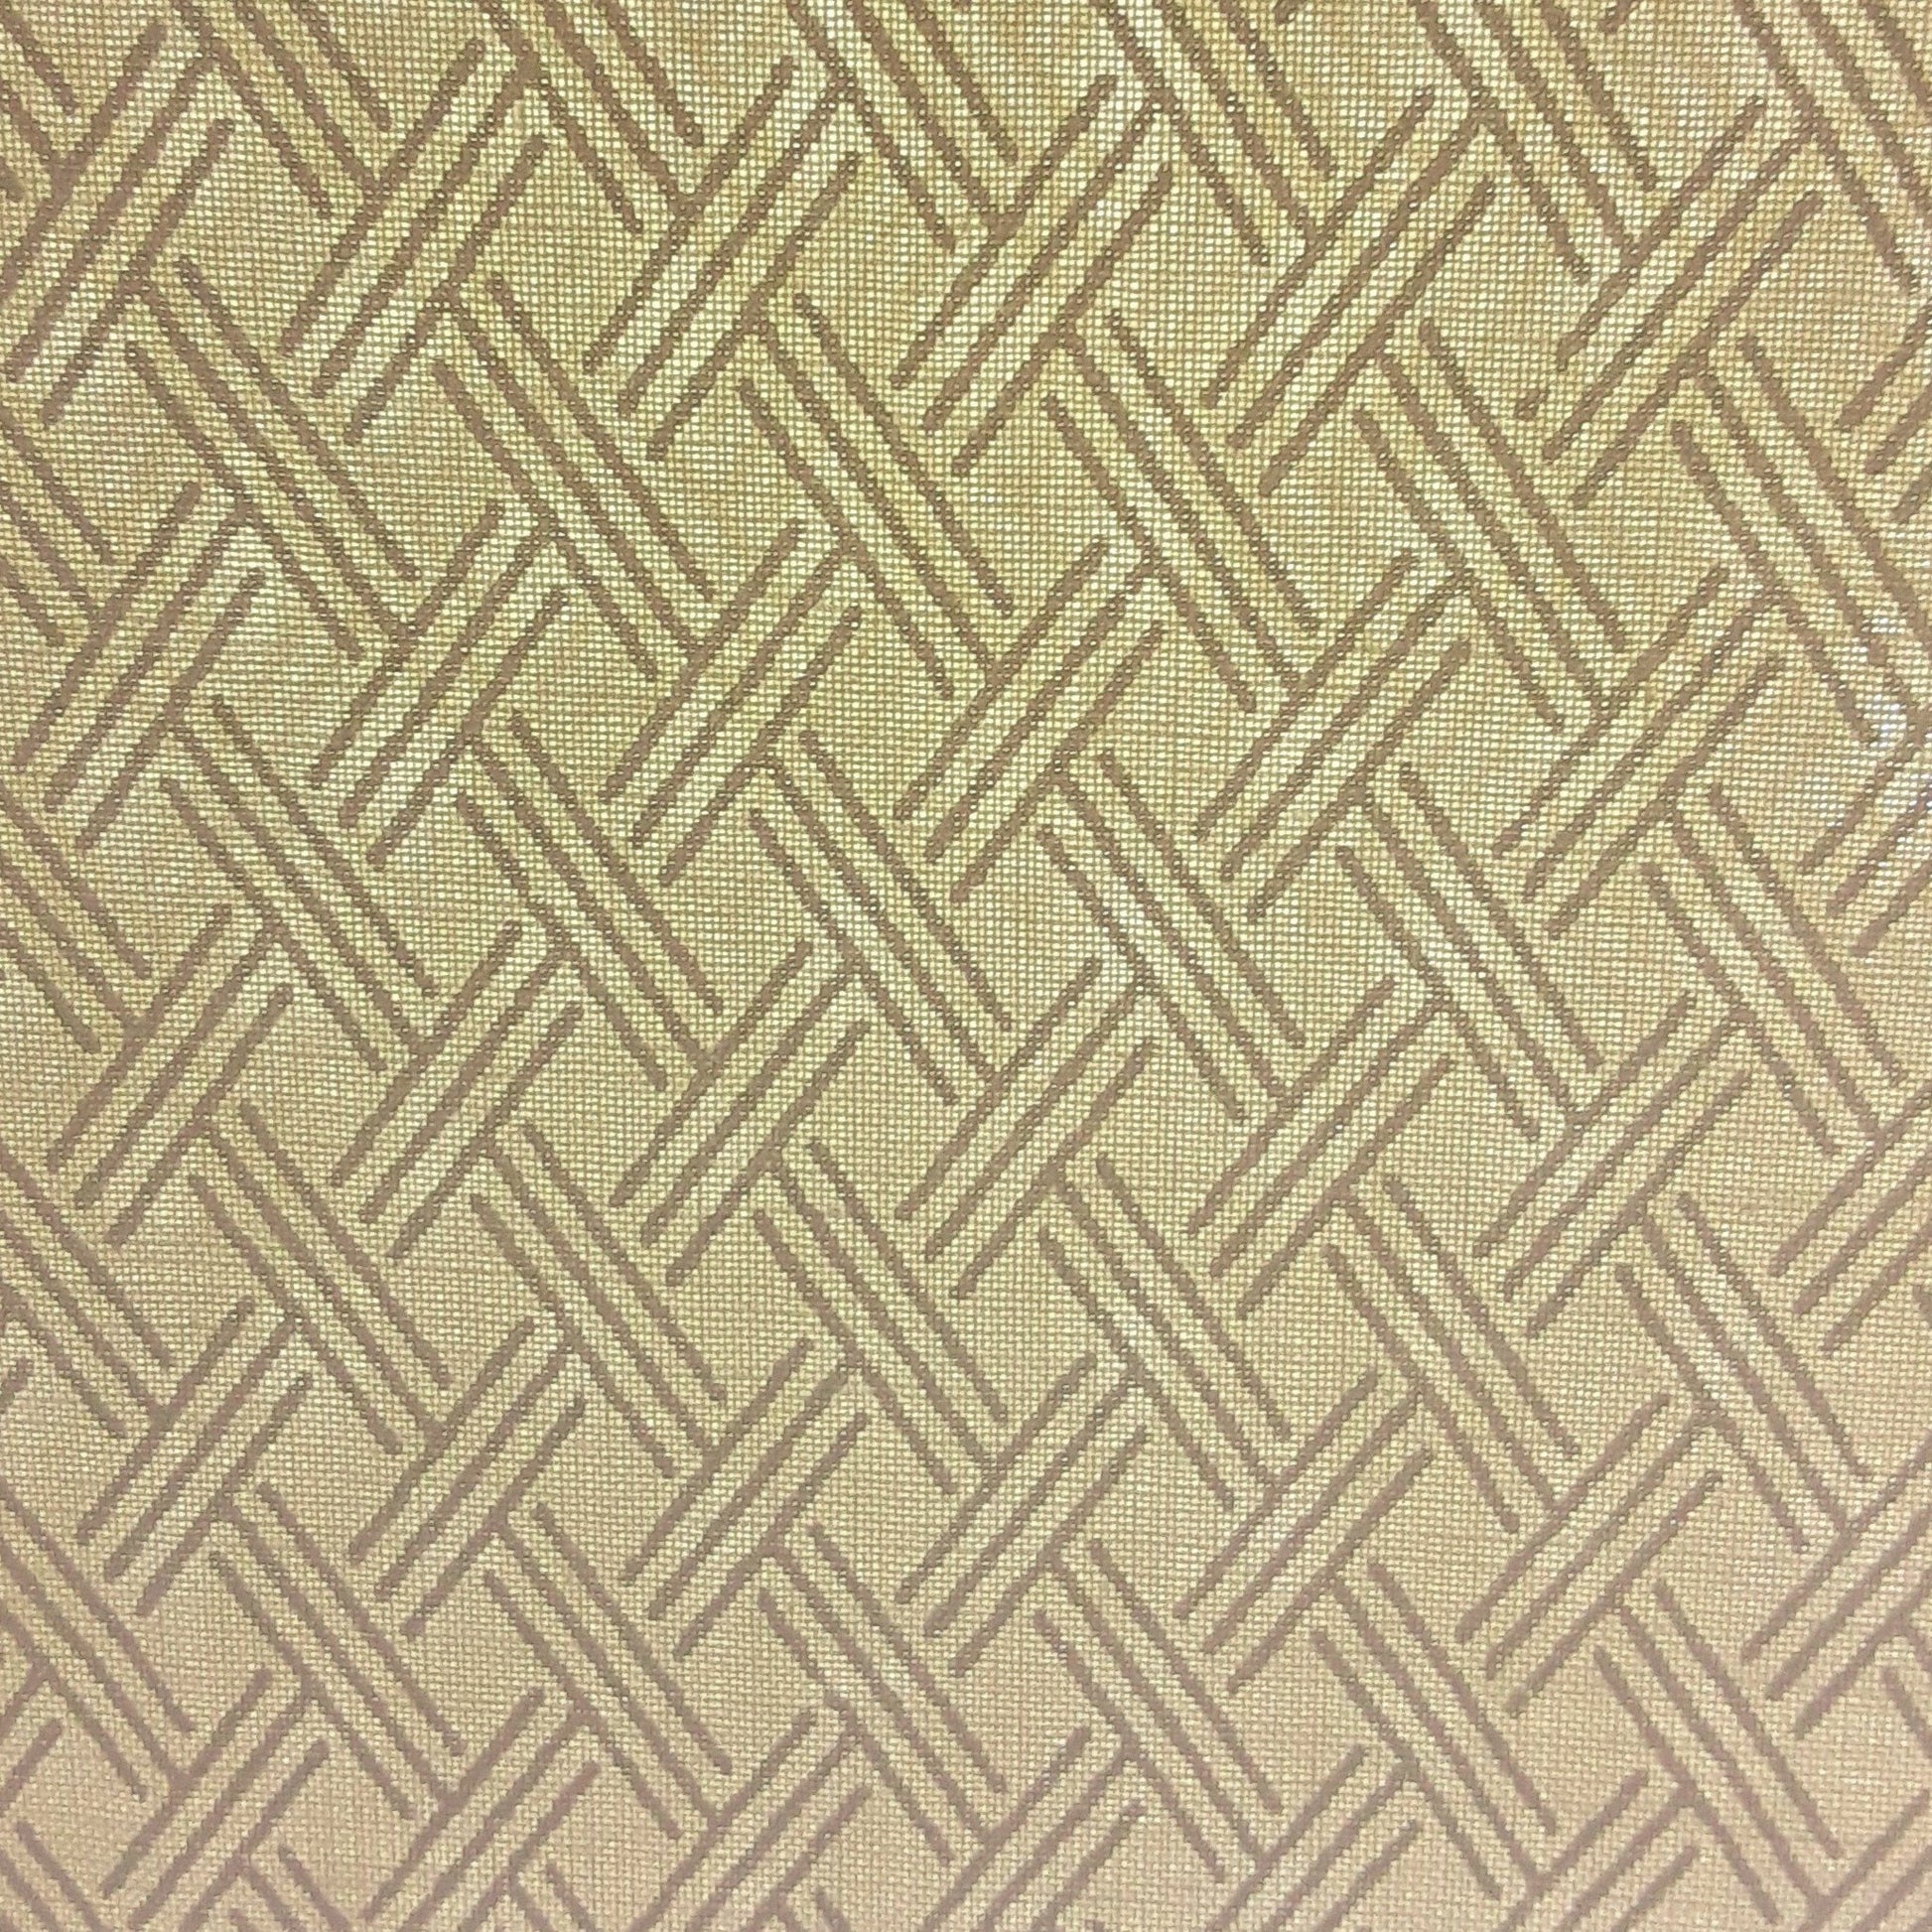 Ivory #U81 Basket Weave Tonal Print Woven Fabric - SKU 5803A